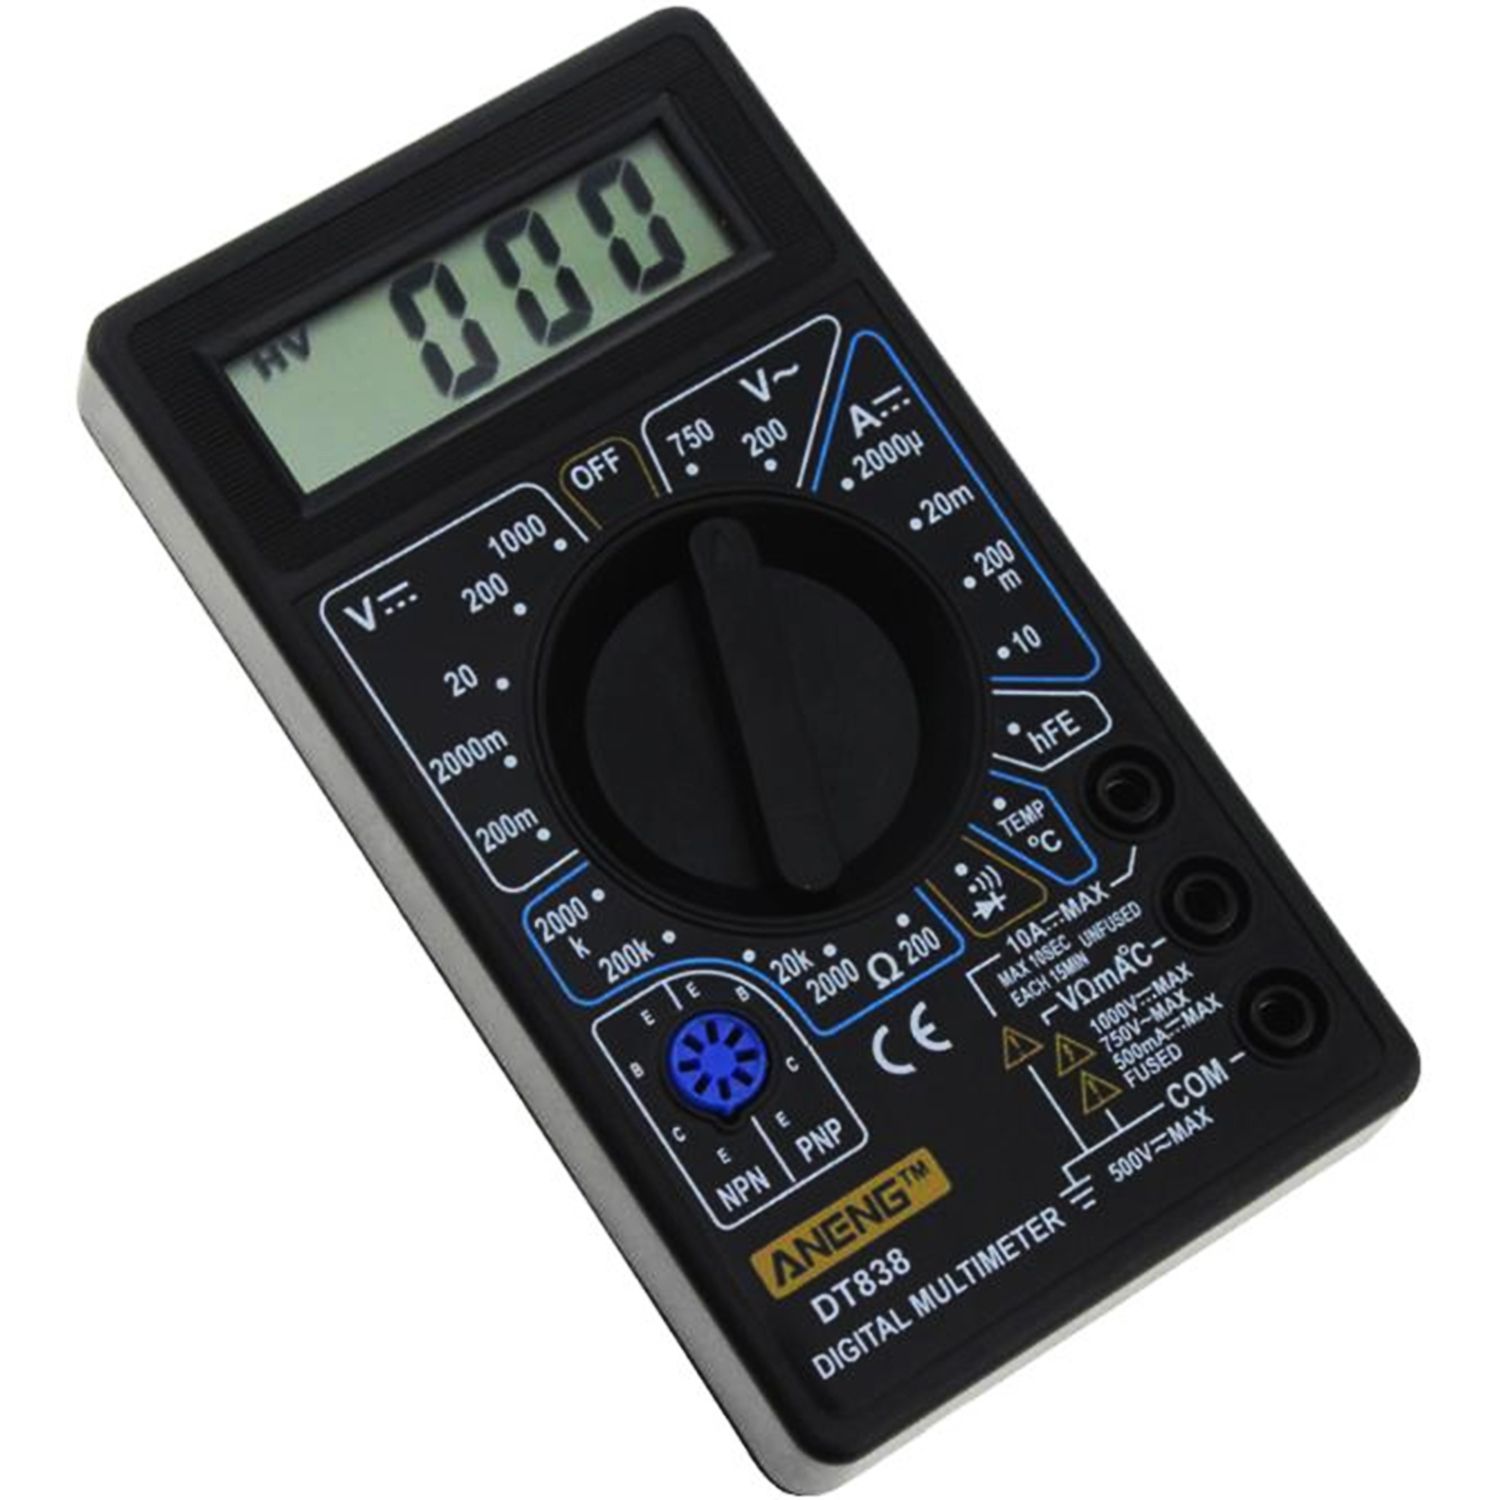 Мультиметр цифровой Digital DT-838 (с термопарой)